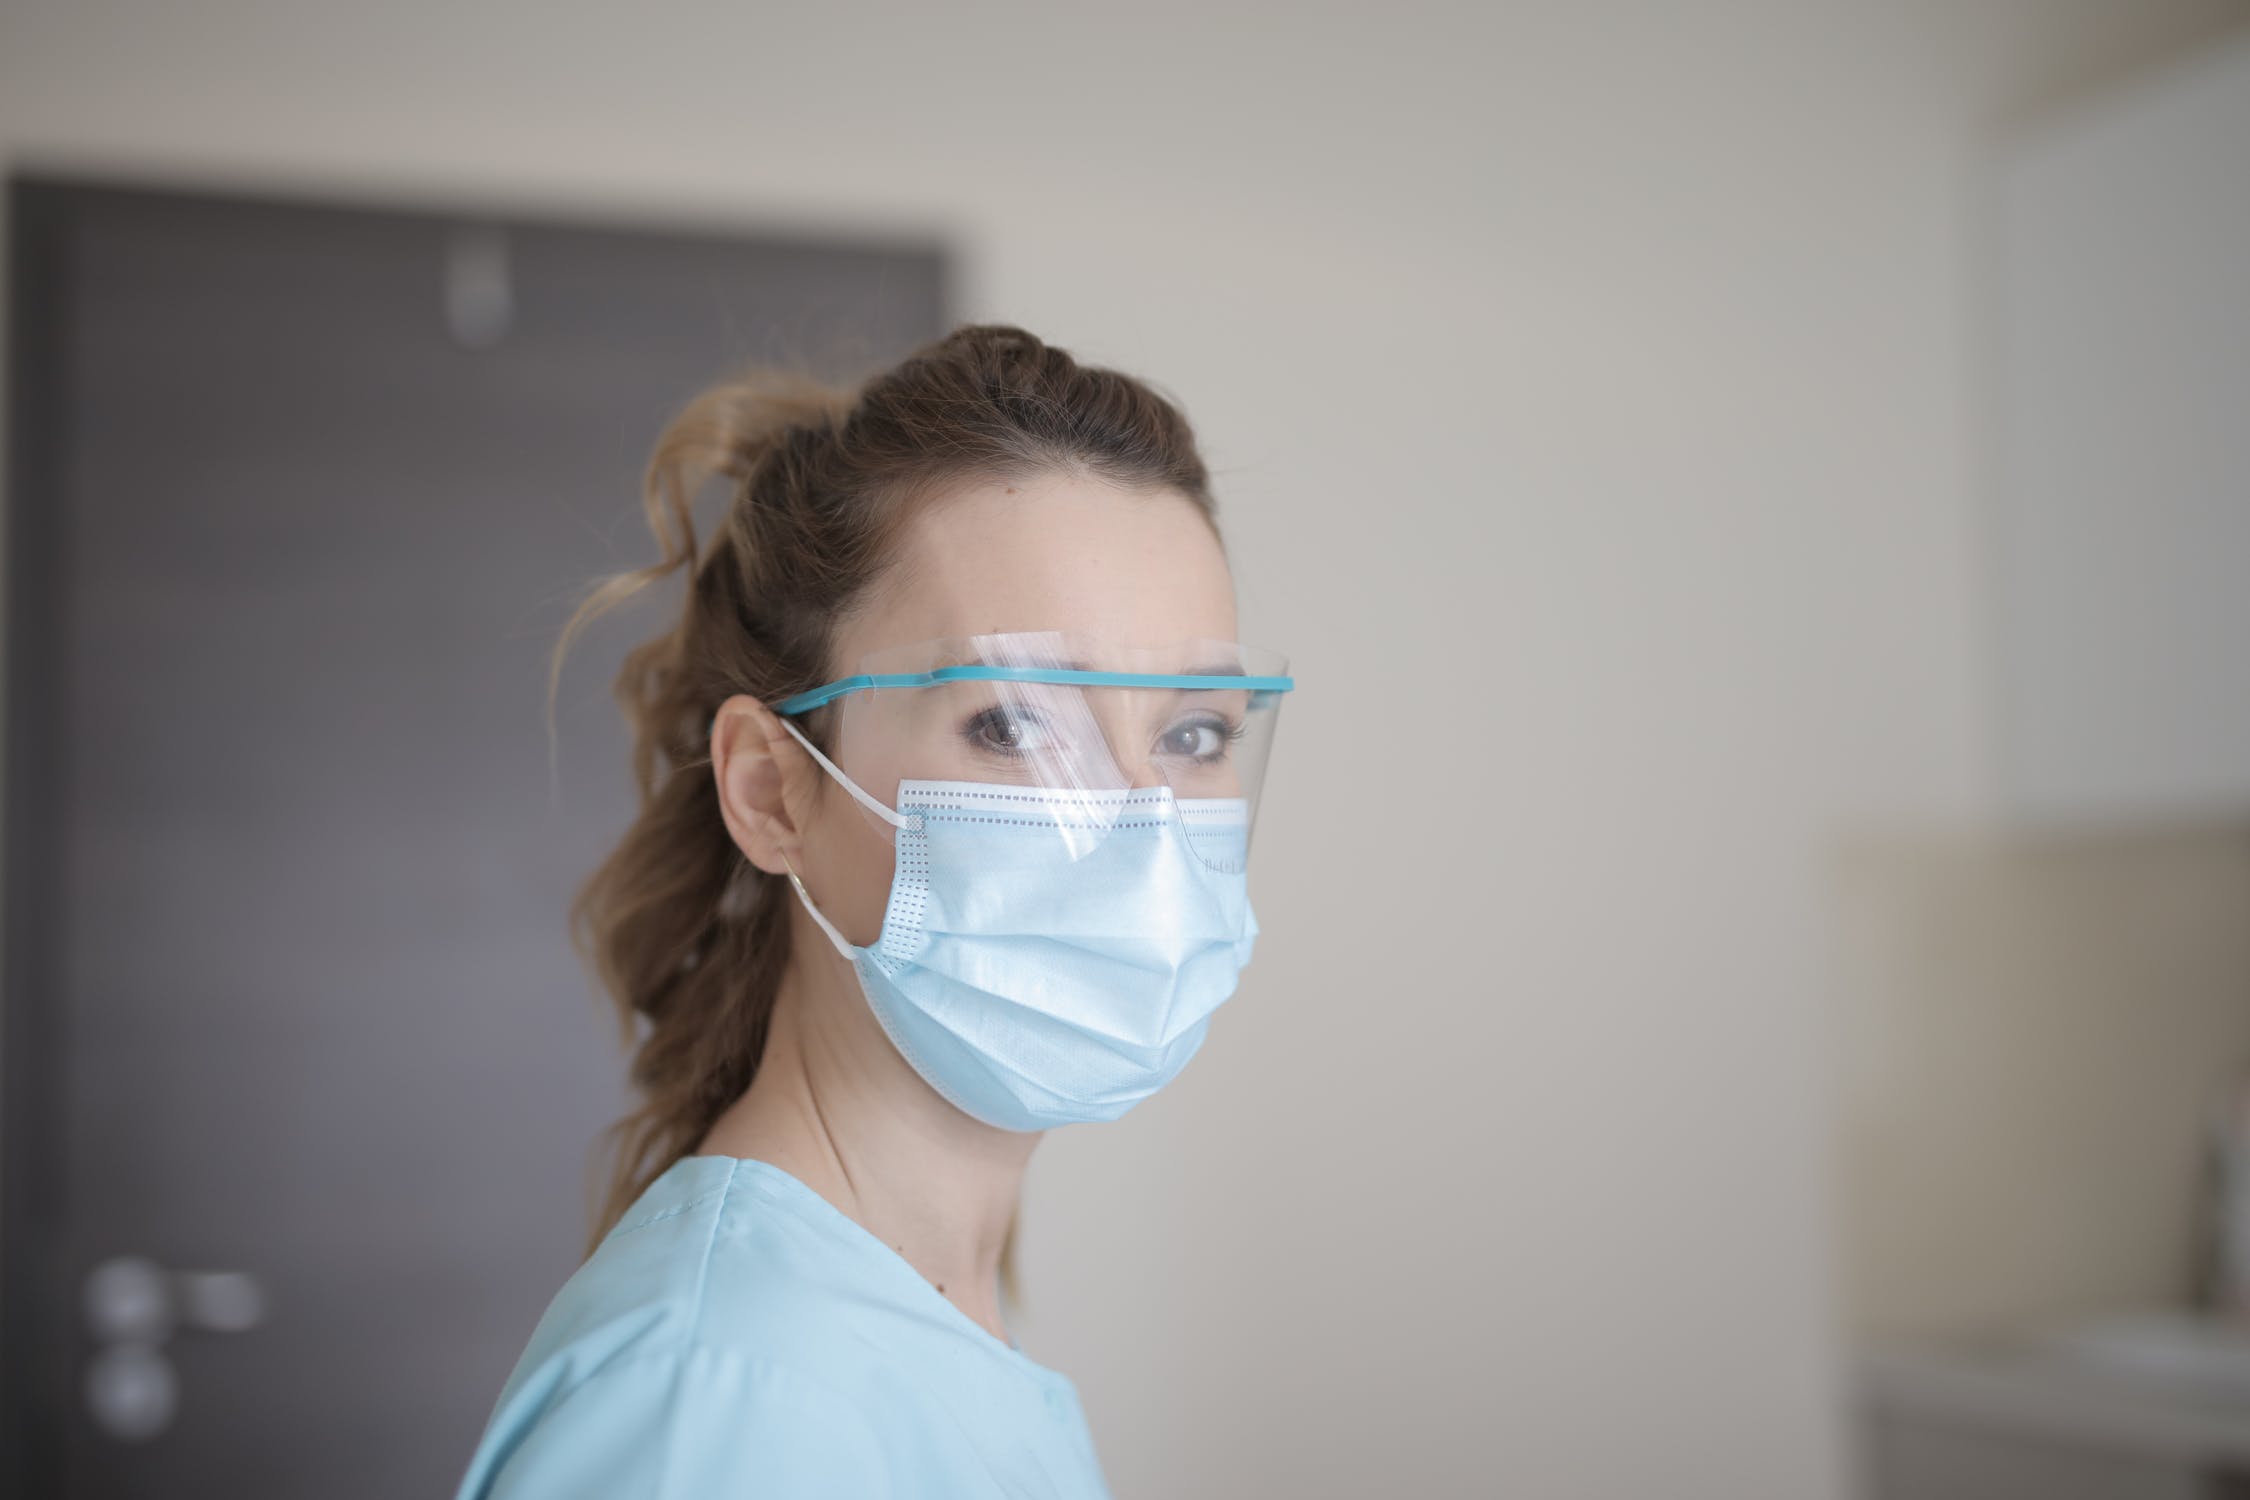 4 de cada 10 metges s'han plantejat deixar la professió durant la pandèmia segons dades de l'informe 